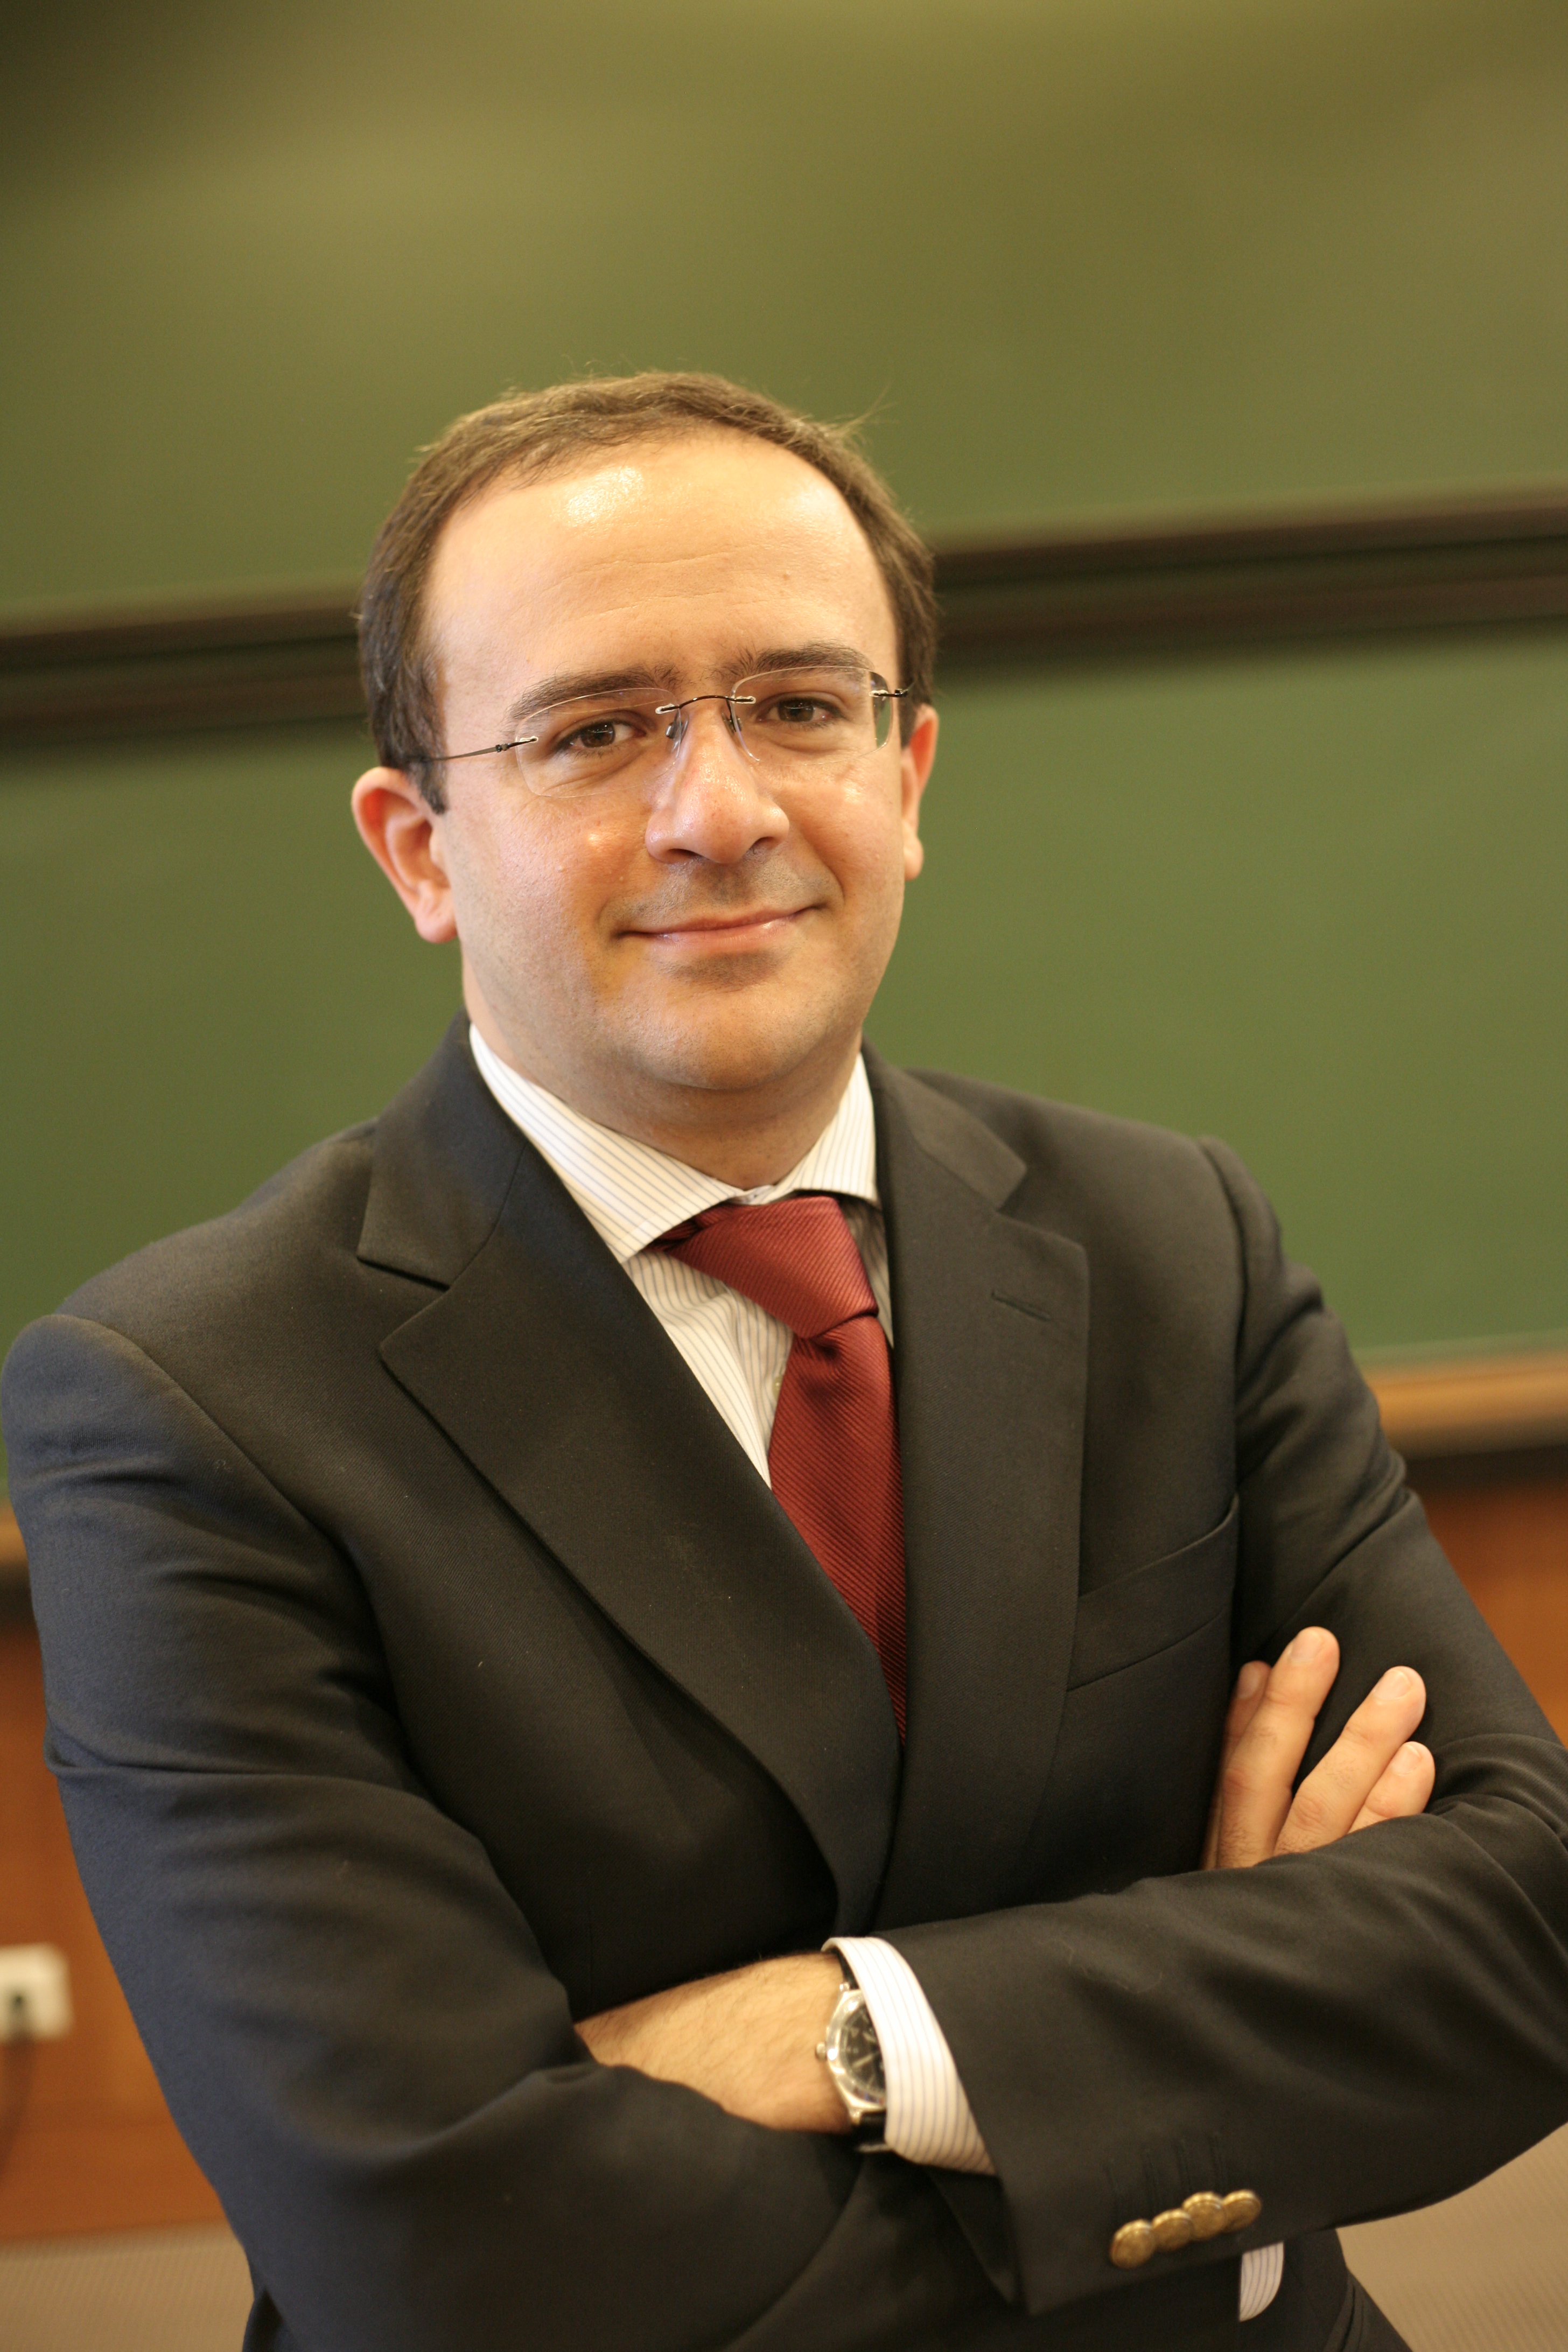 Jorge Ribeirinho Machado, Docente da AESE - Escola de Direcção e Negócios